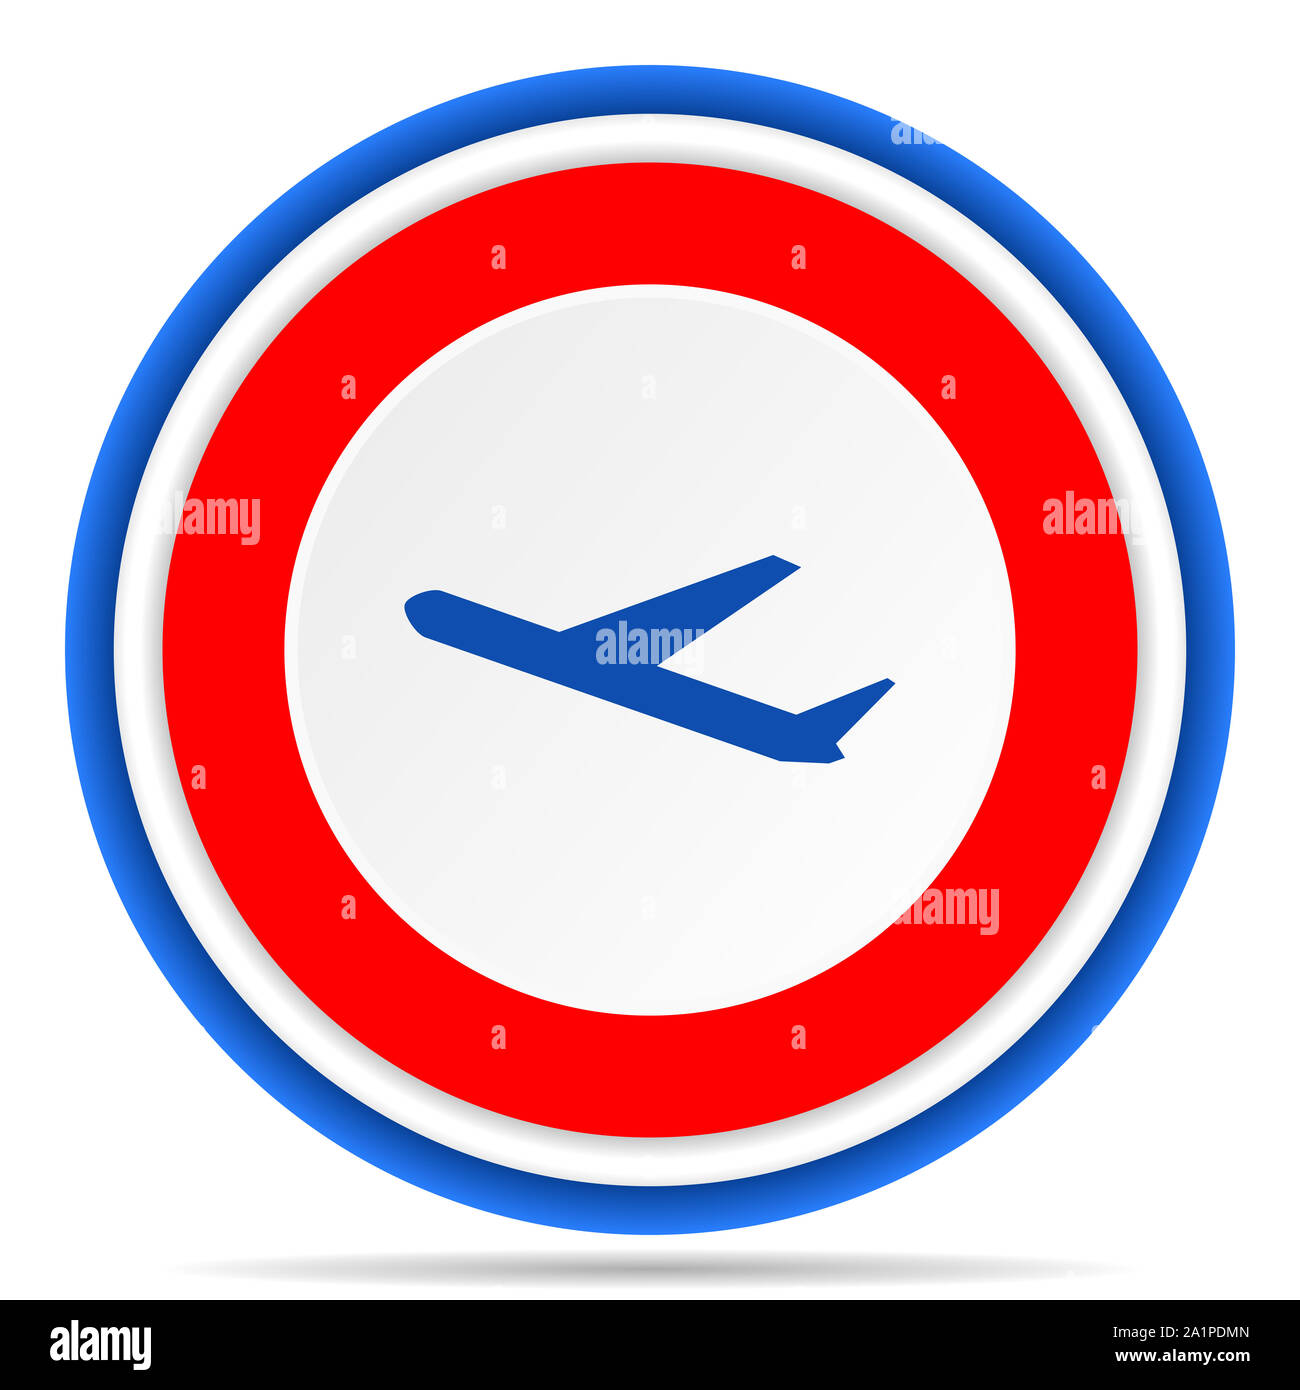 Abflüge runden Symbol, Rot, Blau und Weiß französisches Design Illustration für Web, Internet und mobile Anwendungen Stockfoto